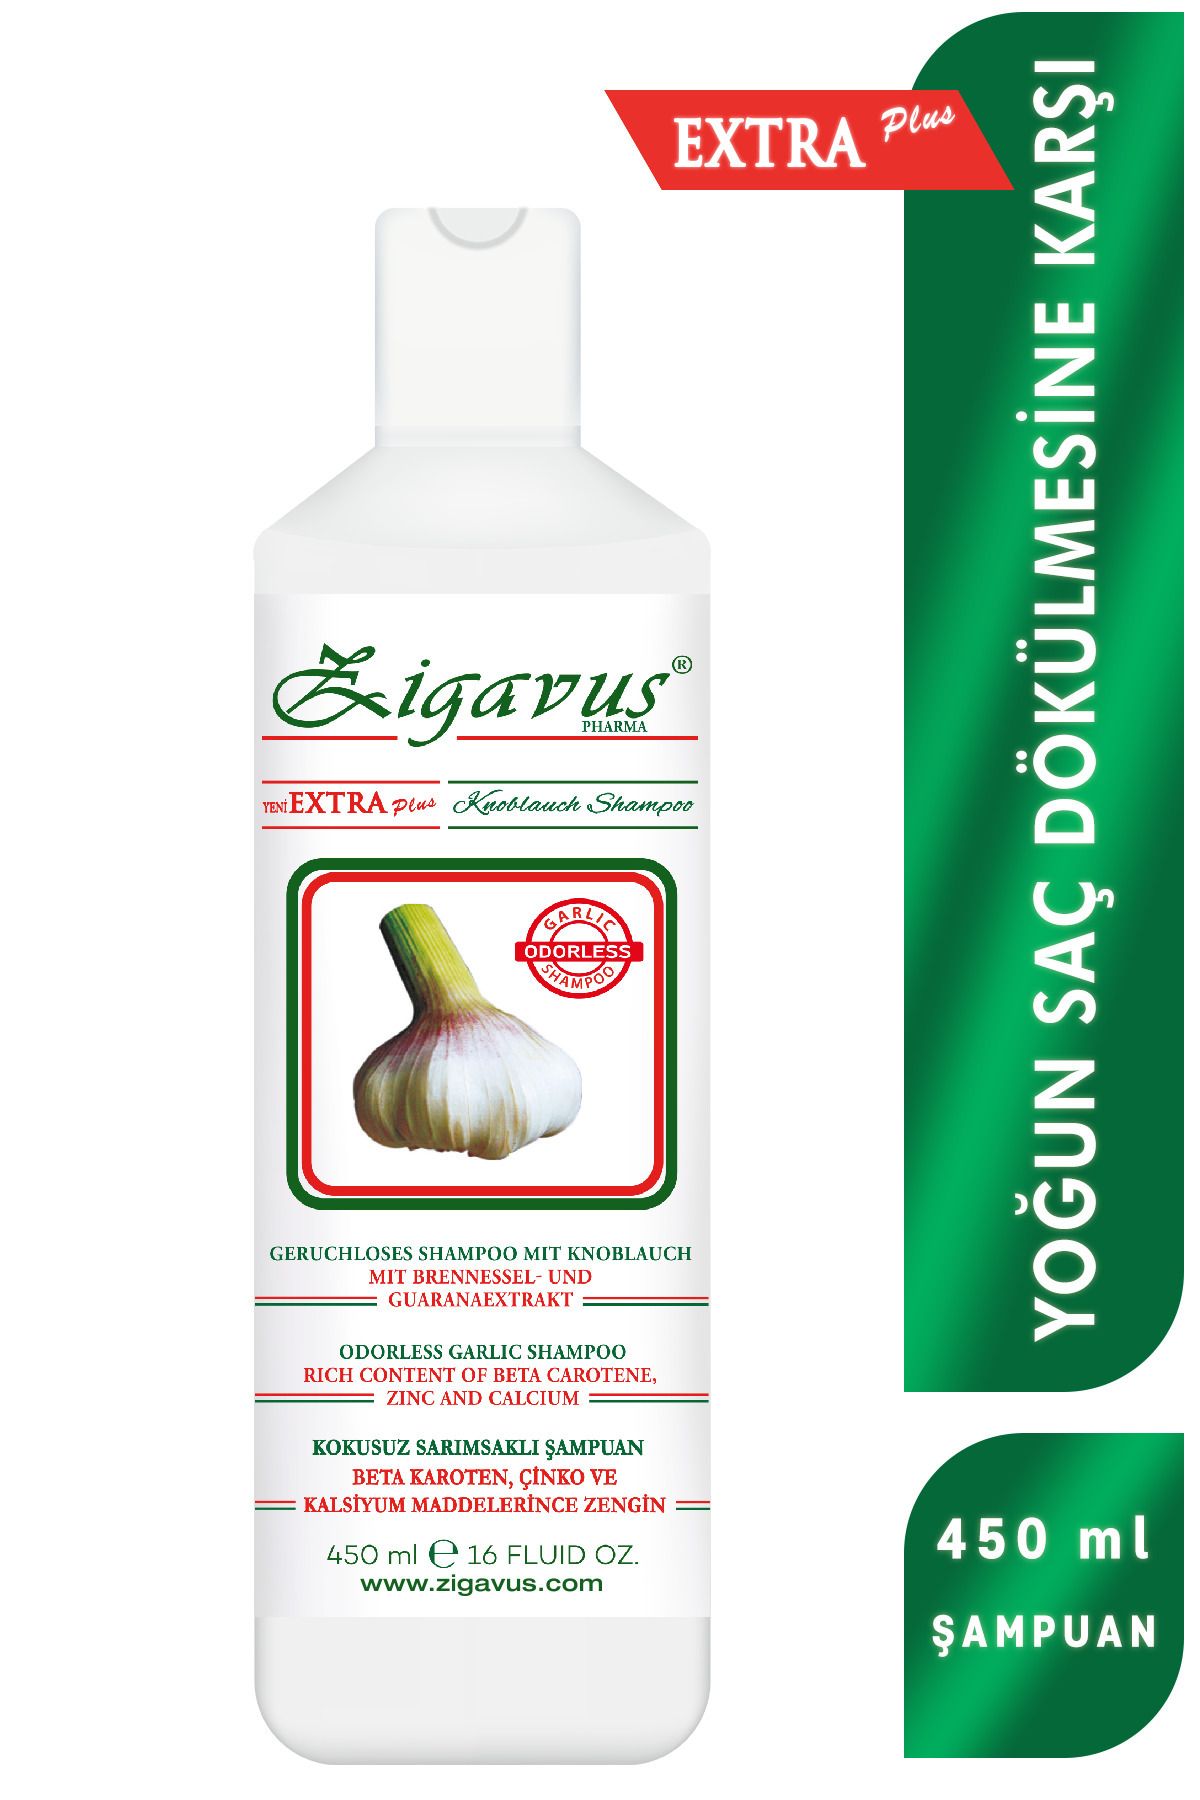 Zigavus Extra Plus Sarımsaklı Şampuan Yoğun Saç Dökülmesine Karşı Şampuan 450ml Beta Karoten Ve Çinko Içerir